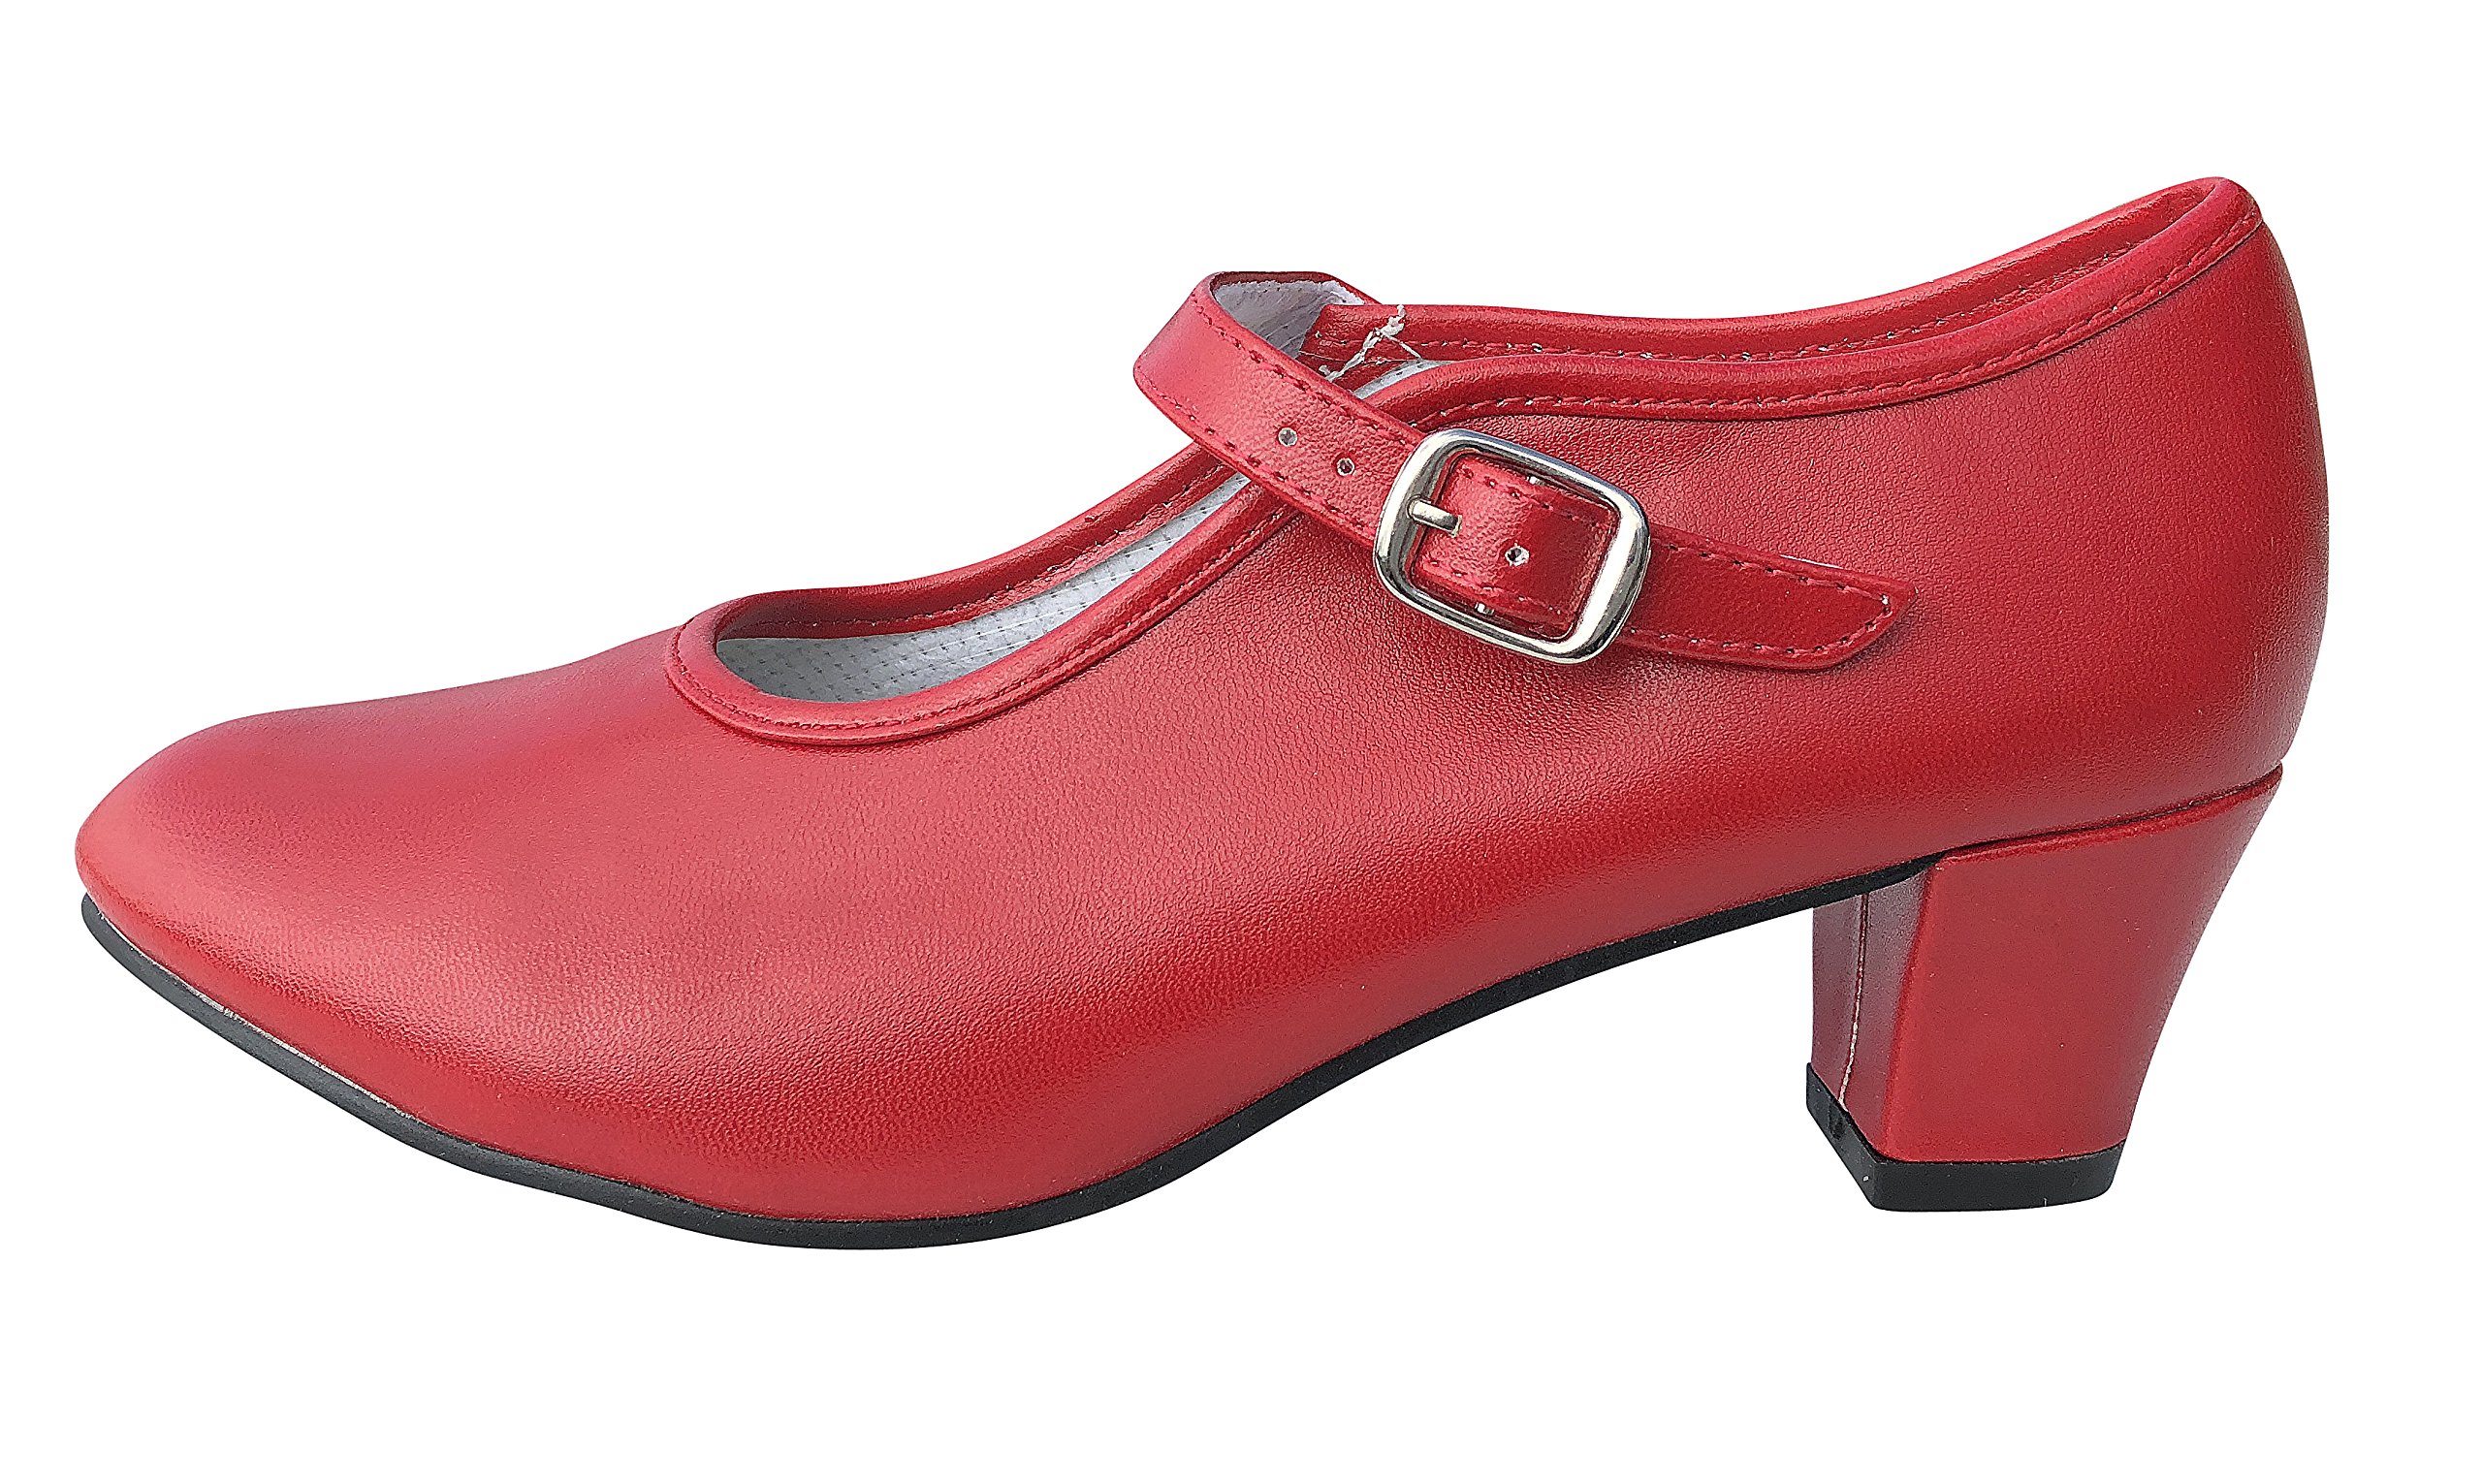 La Senorita Spanische Flamenco Schuhe - Rot für Kinder und Damen (Größe 37 - Innenmaß 23,5 cm)